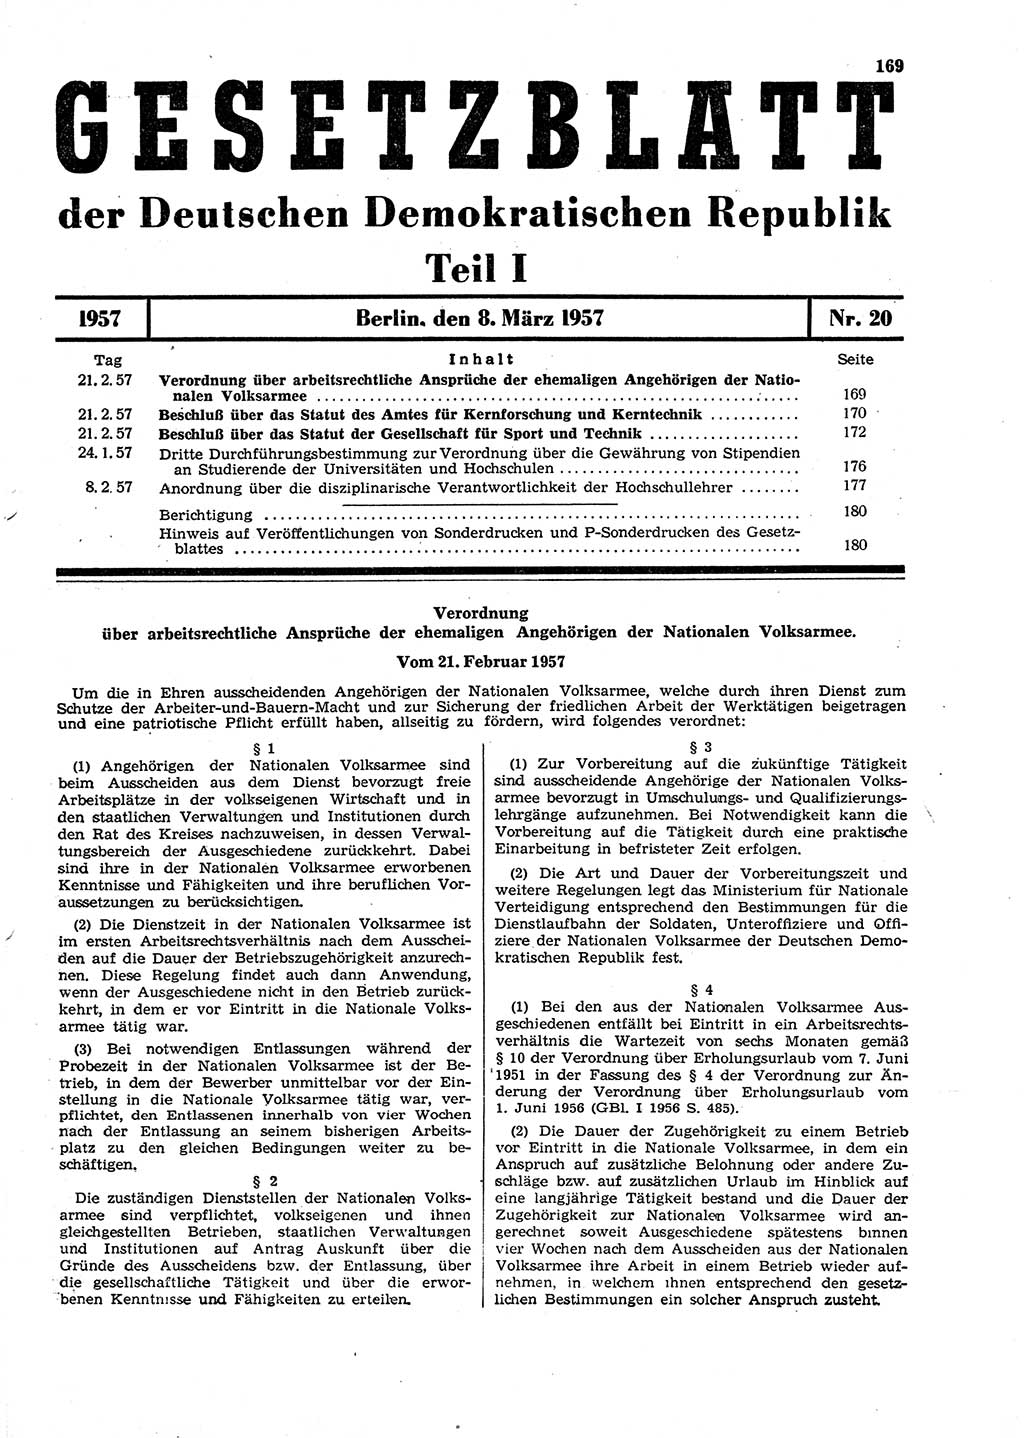 Gesetzblatt (GBl.) der Deutschen Demokratischen Republik (DDR) Teil Ⅰ 1957, Seite 169 (GBl. DDR Ⅰ 1957, S. 169)